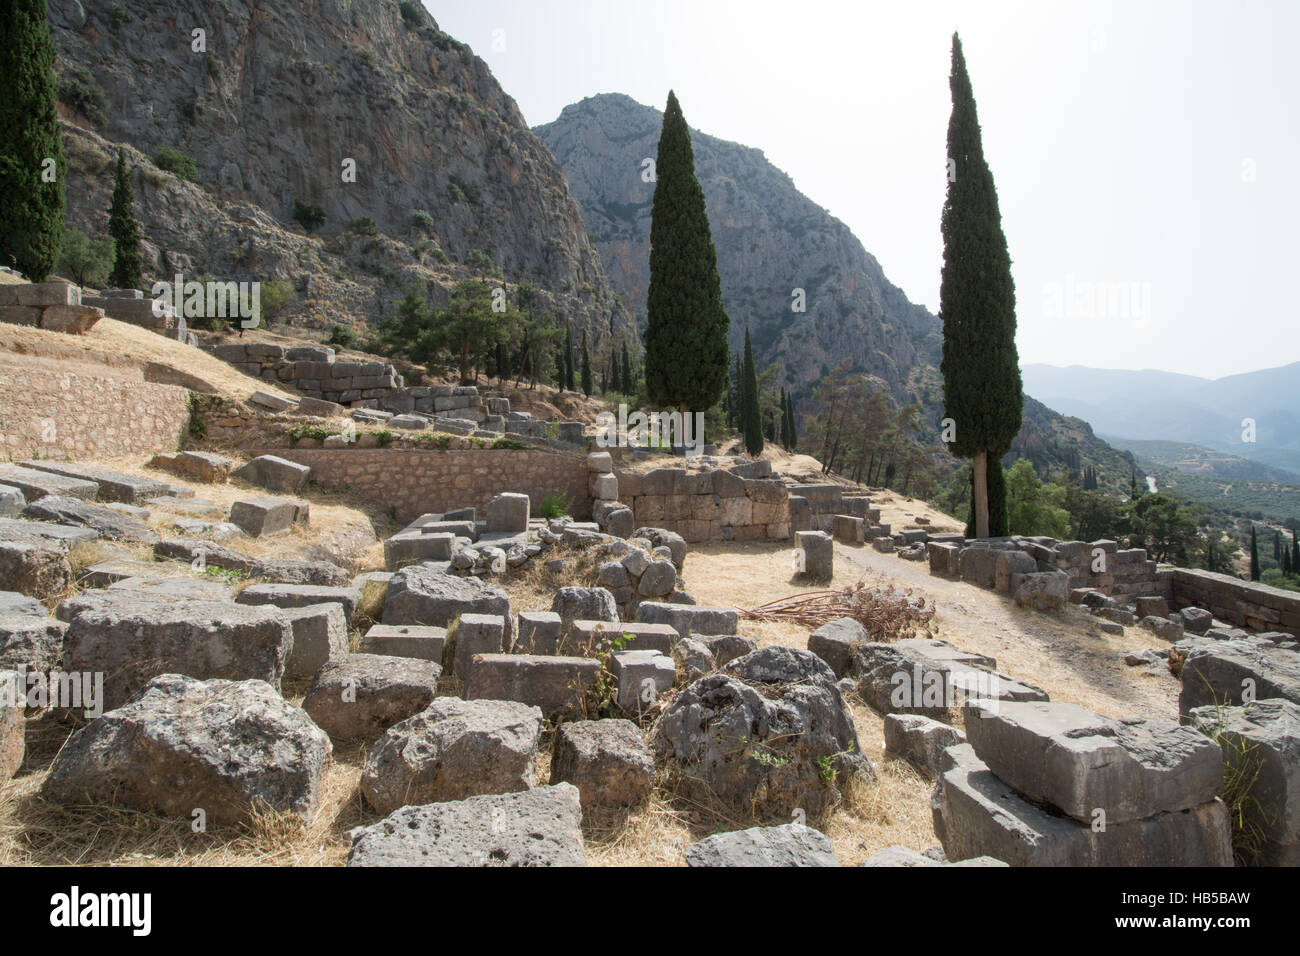 Le site archéologique de Delphes, en Grèce Banque D'Images